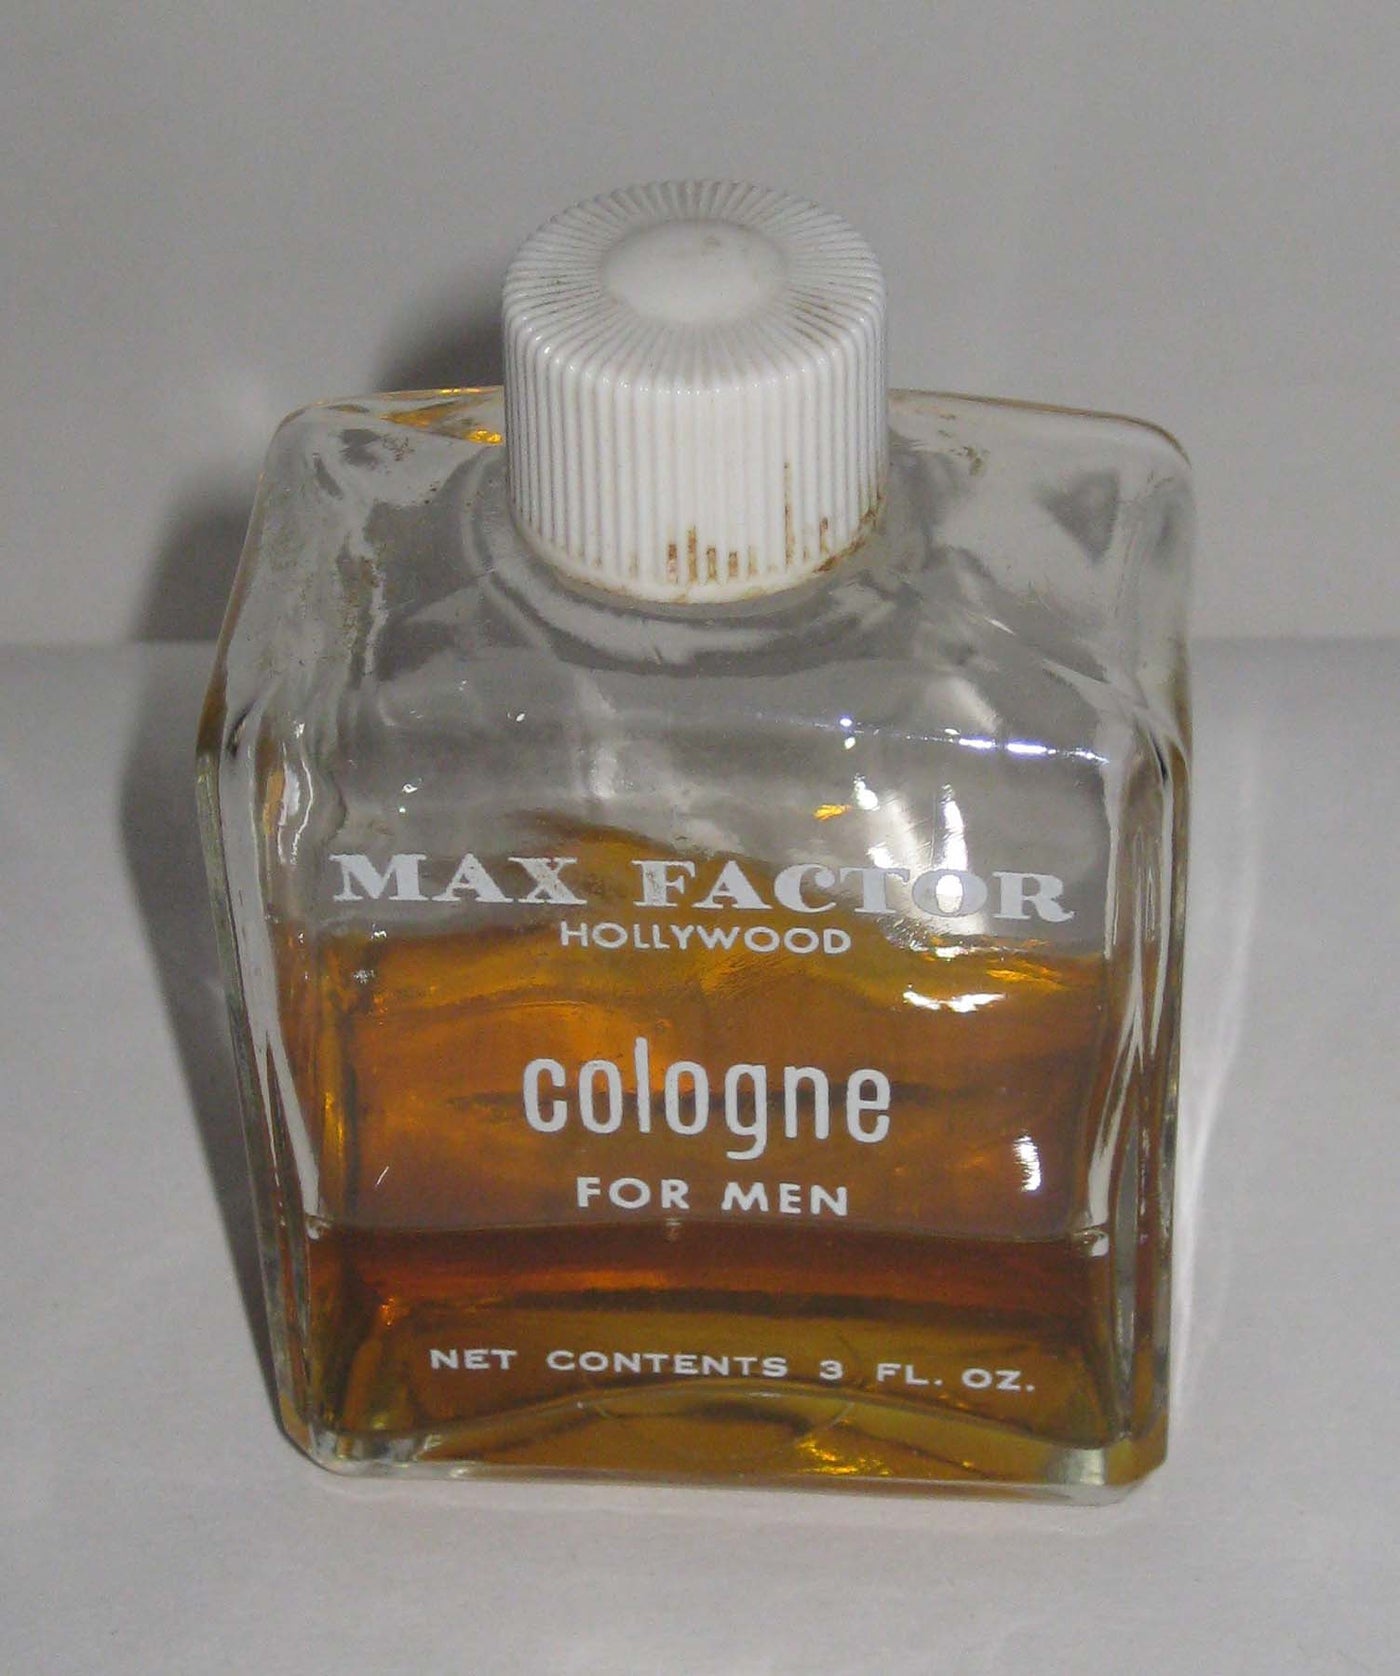 Max Factor Cologne For Men